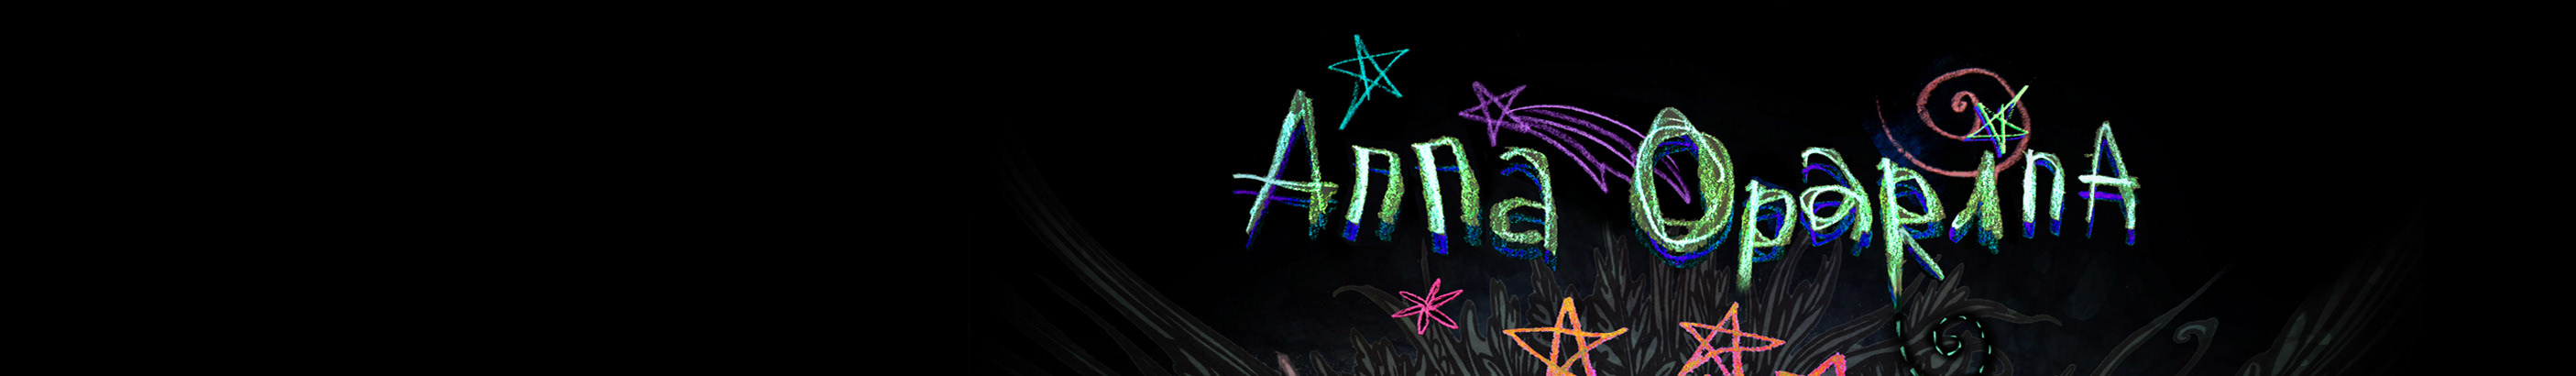 Anna Oparina's profile banner